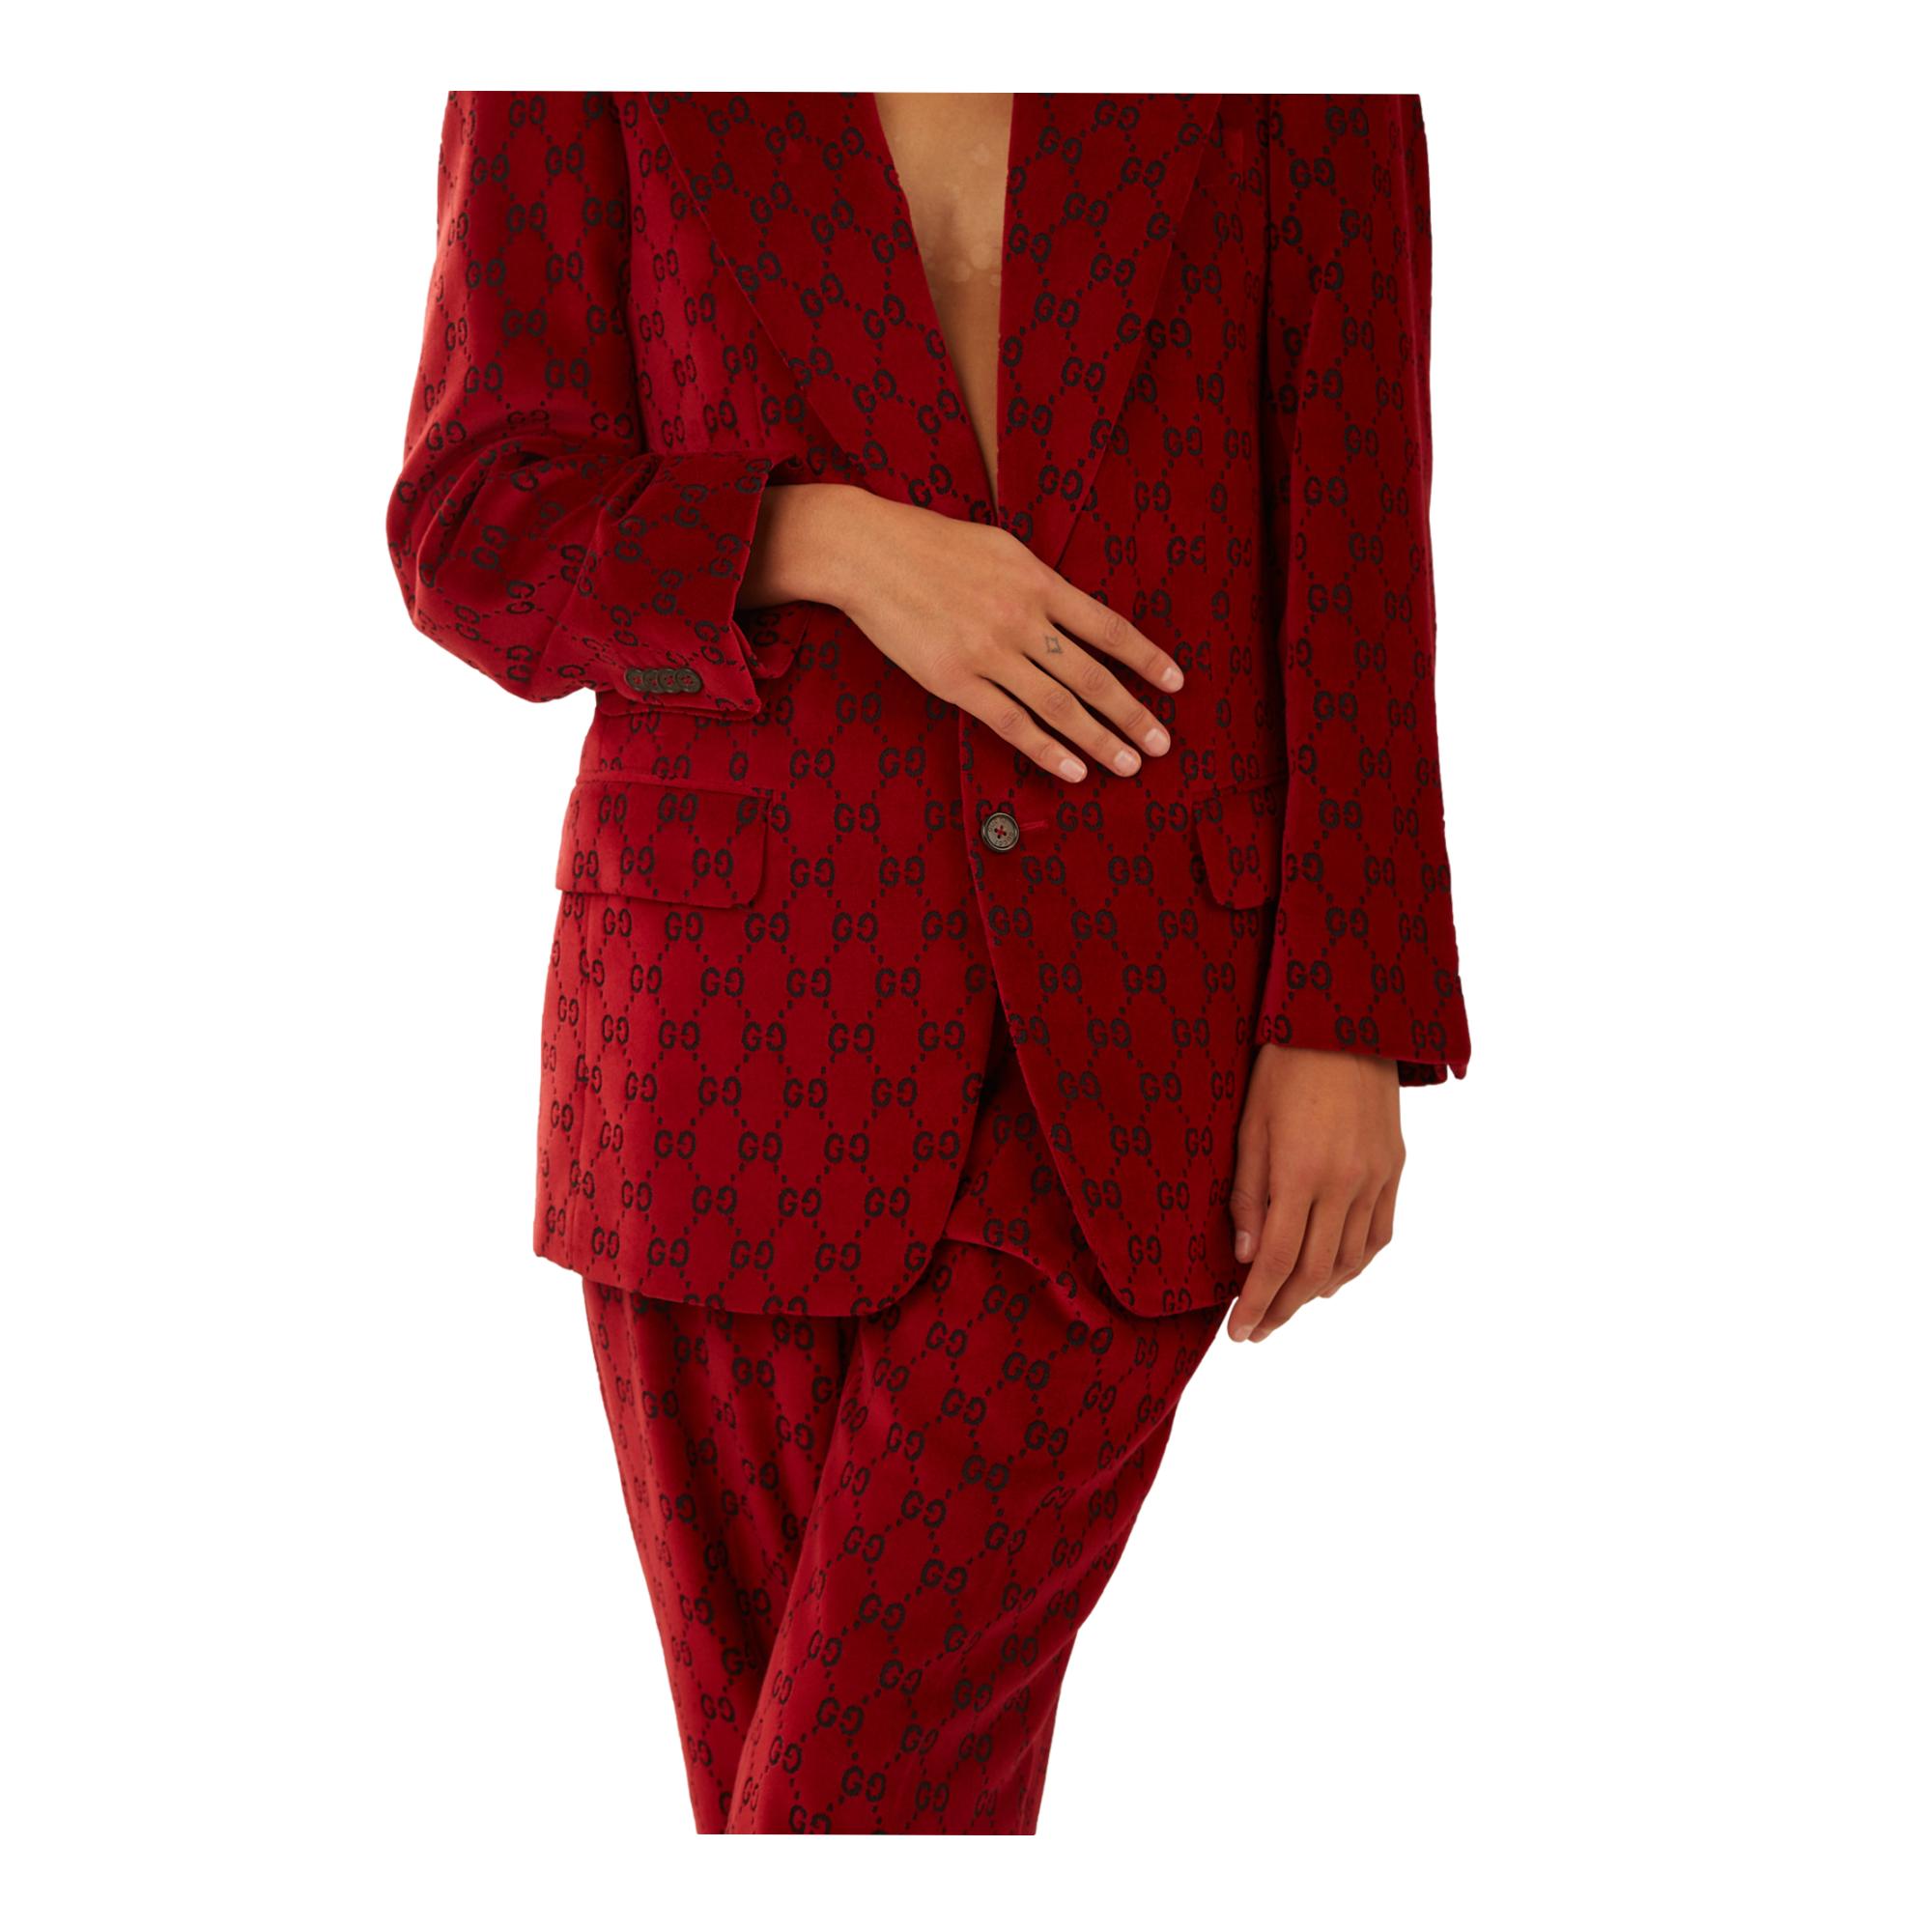 Gucci's Famous Red Velvet Suit